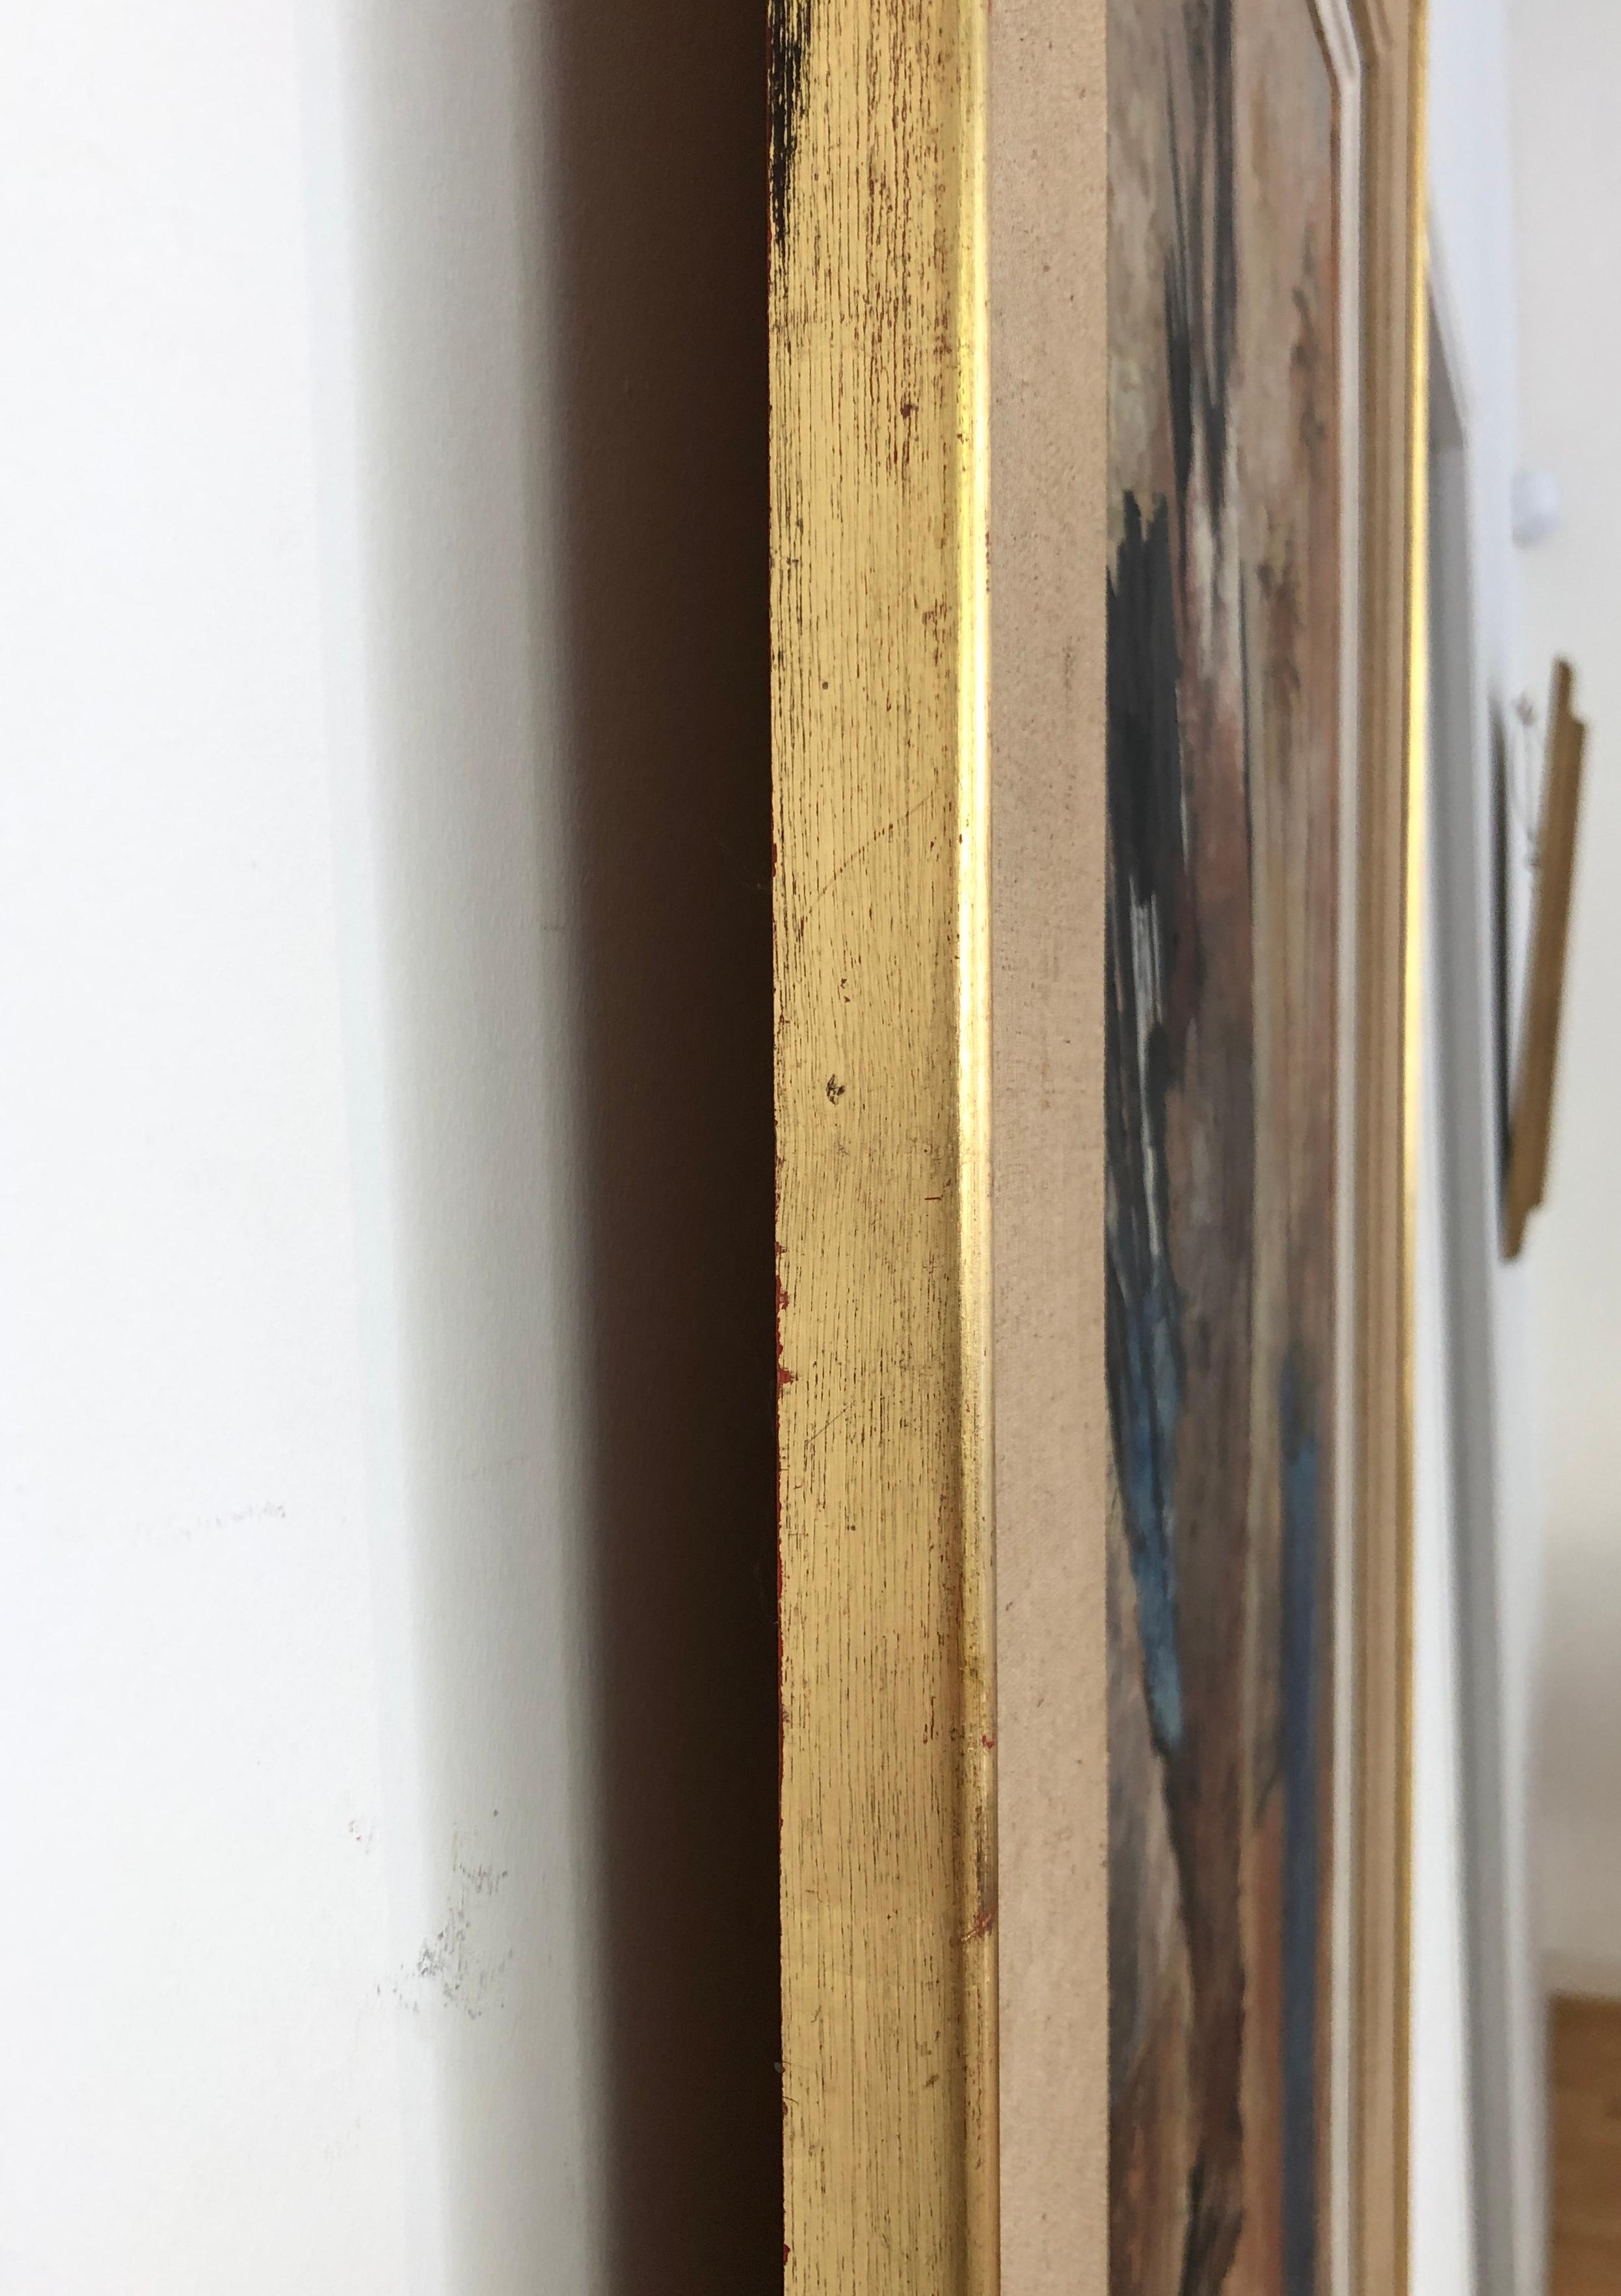 Work on canvas
Golden wooden frame
92.3 x 60.5 x 2.5 cm